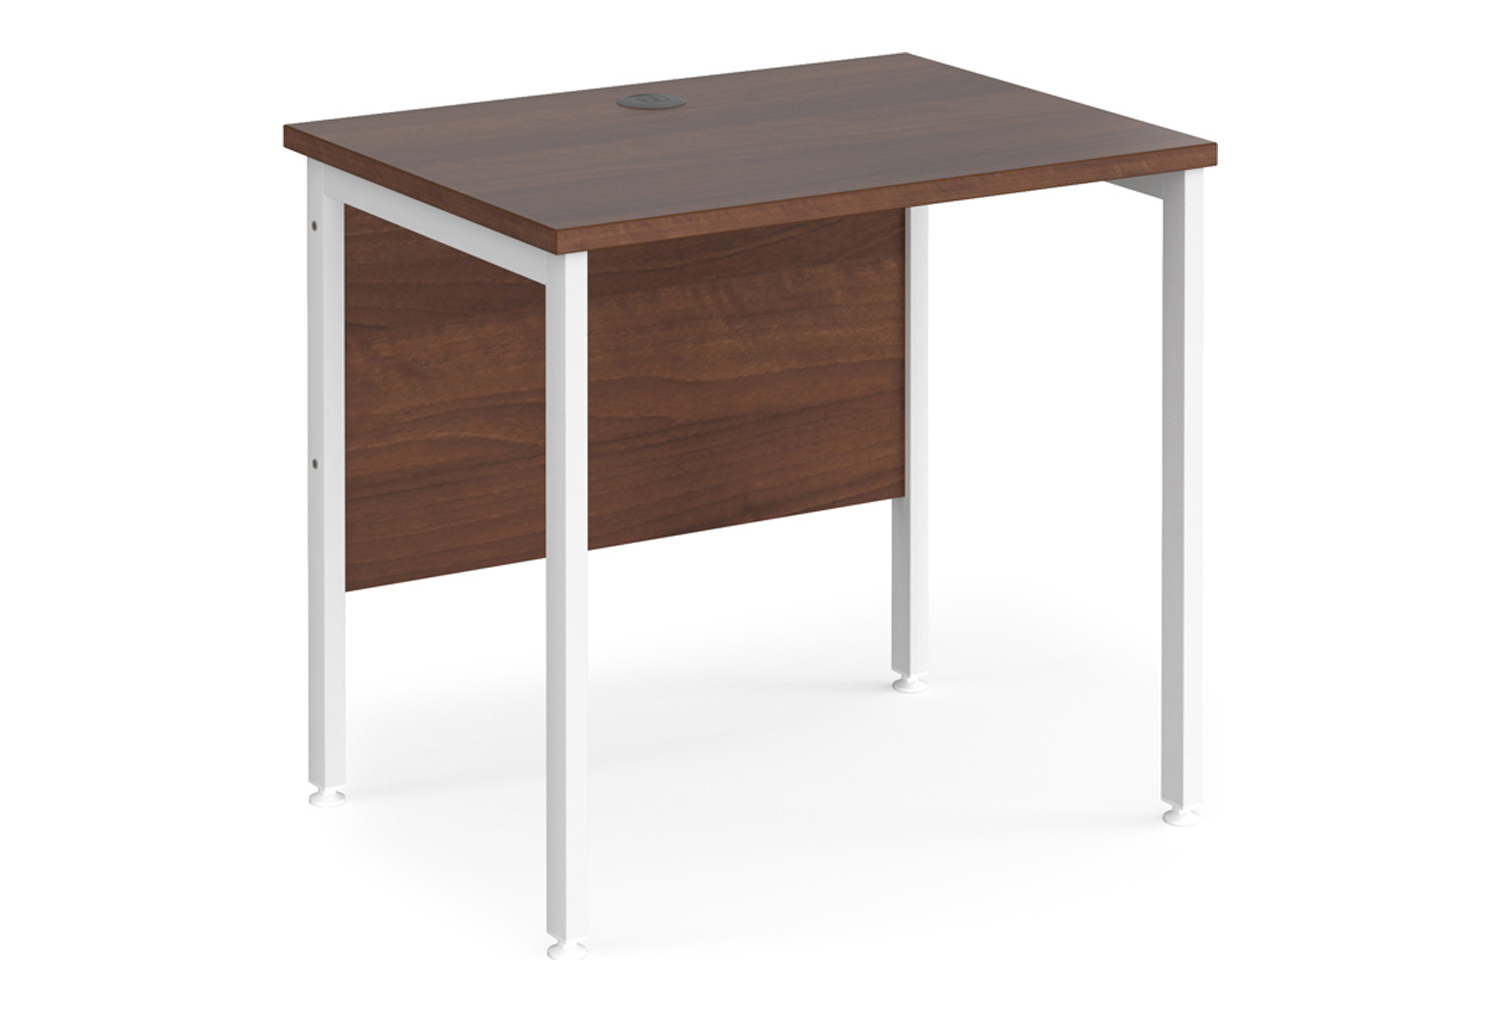 Value Line Deluxe H-Leg Narrow Rectangular Office Desk (White Legs), 80wx60dx73h (cm), Walnut